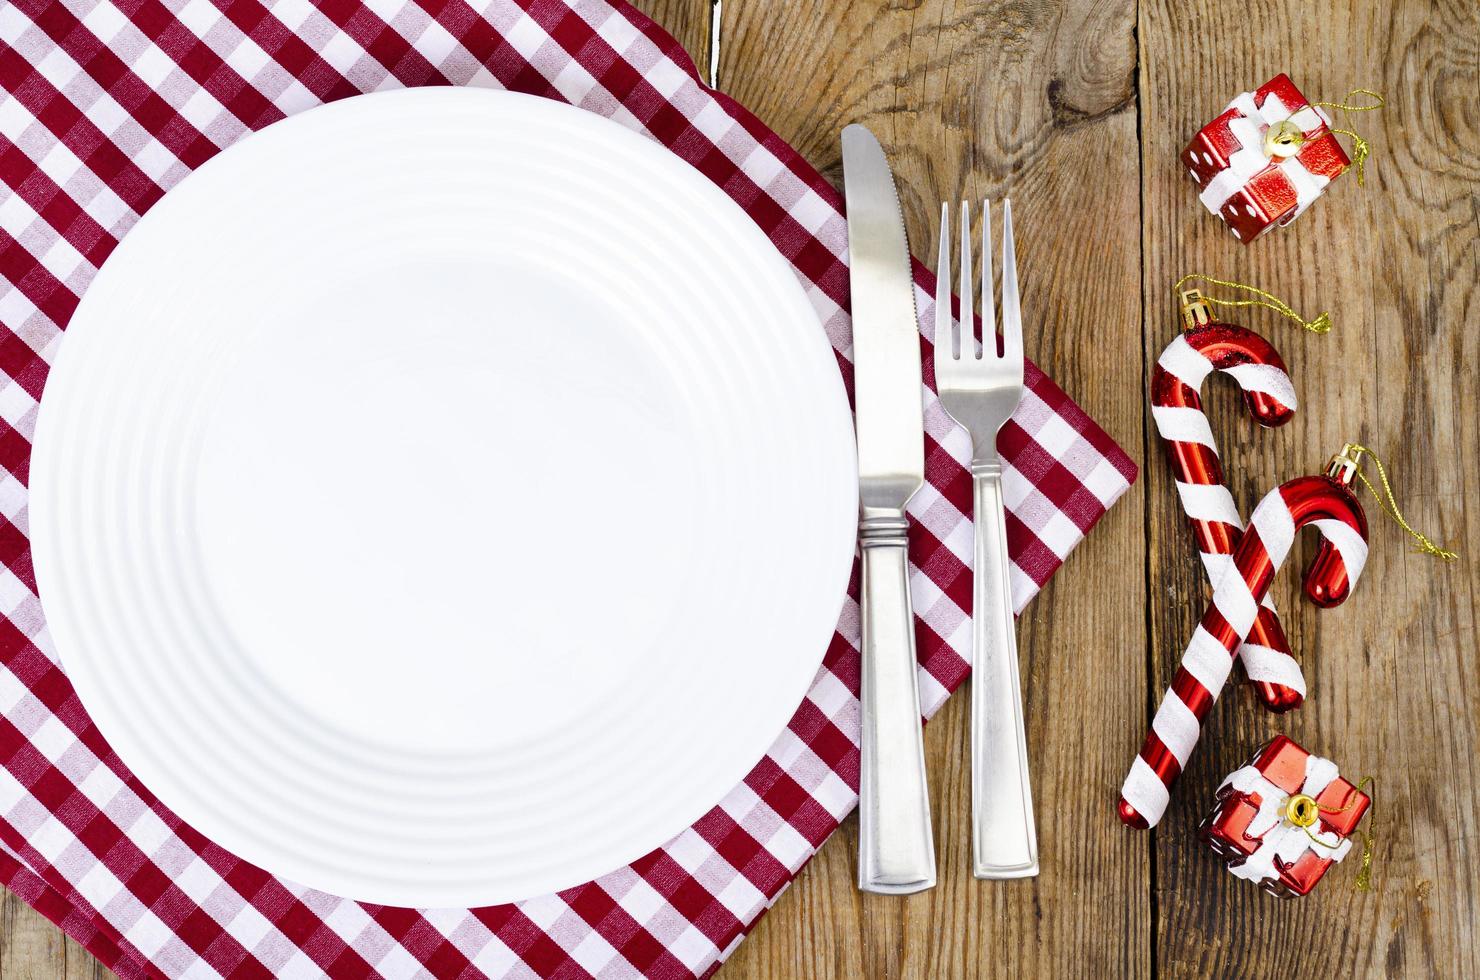 conceito de Natal e ano novo. prato branco, toalha de mesa vermelha. foto de estúdio